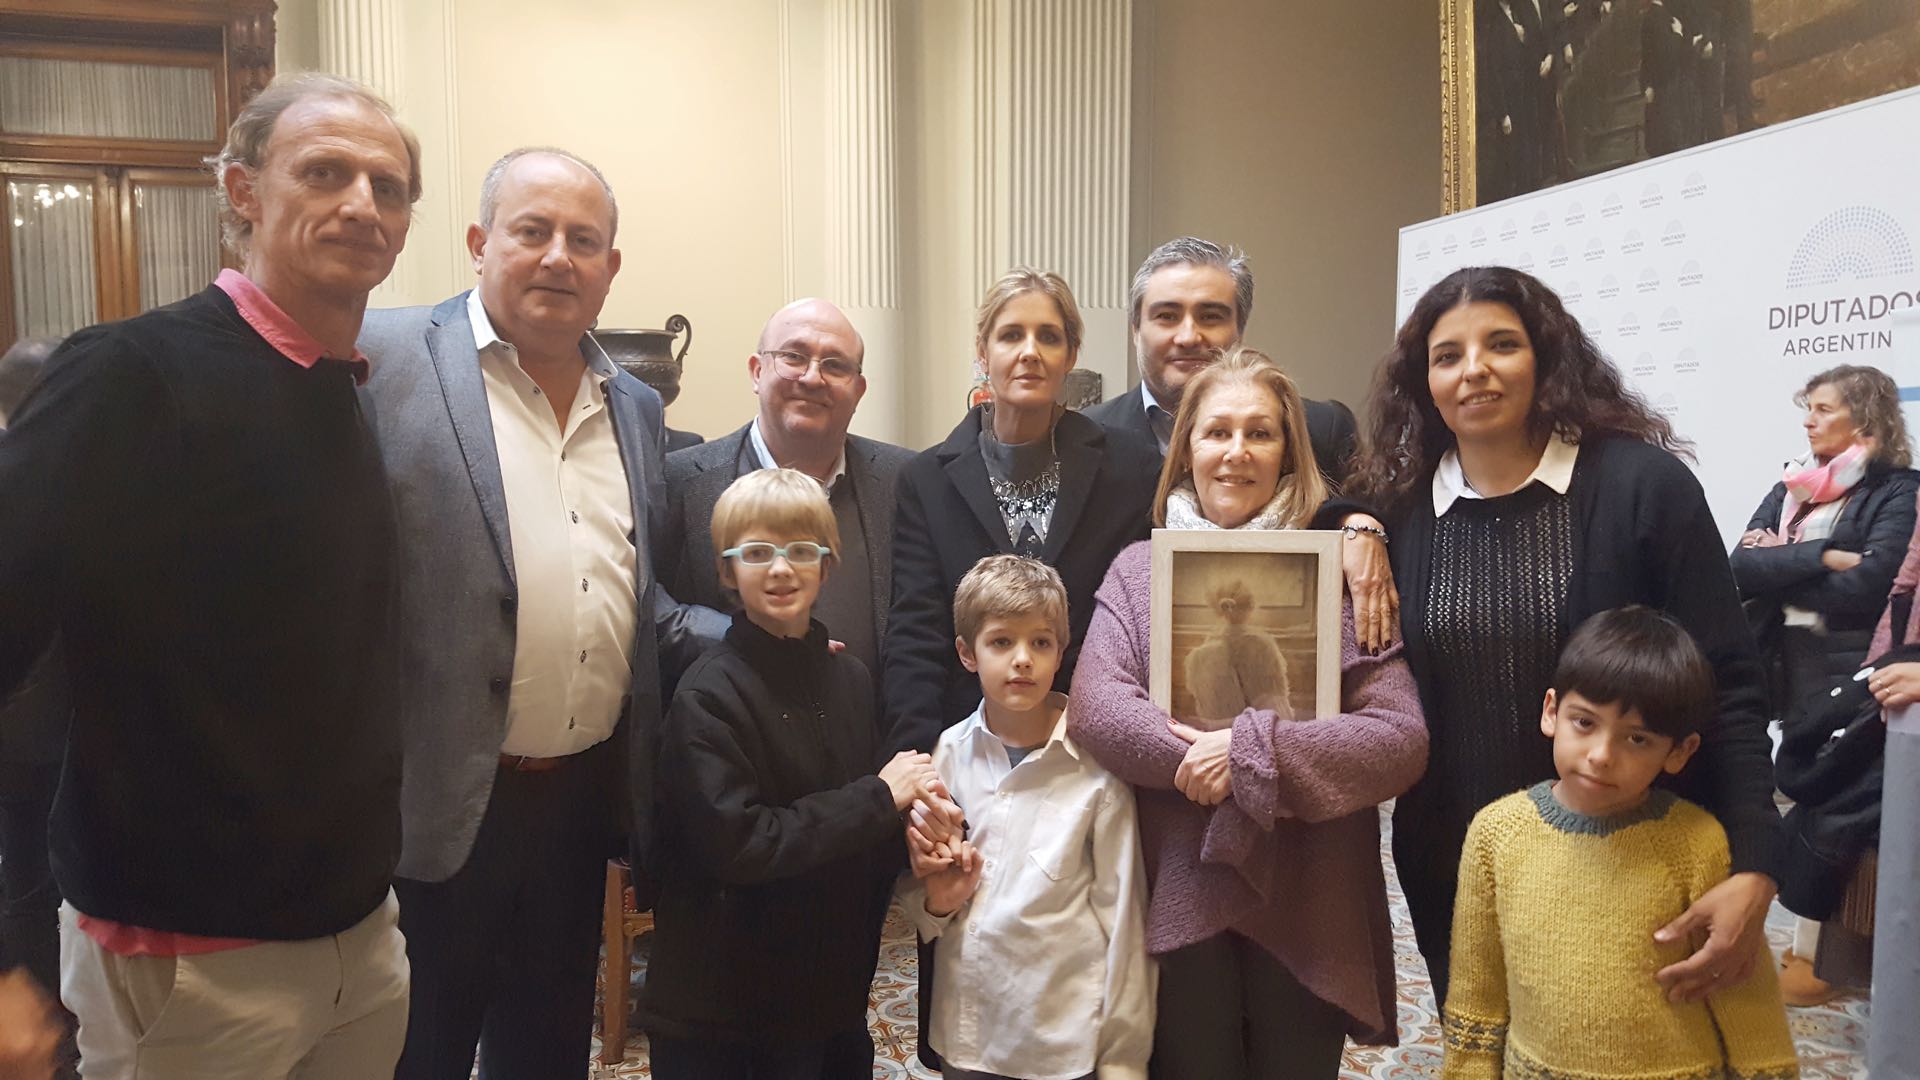 Ezequiel, Juan Carlos Marino, Juan Carlos Maceira, Paola, Cipriano y Ceferino junto a su abuela Pelusa y amigos de la familia Lo Cane.